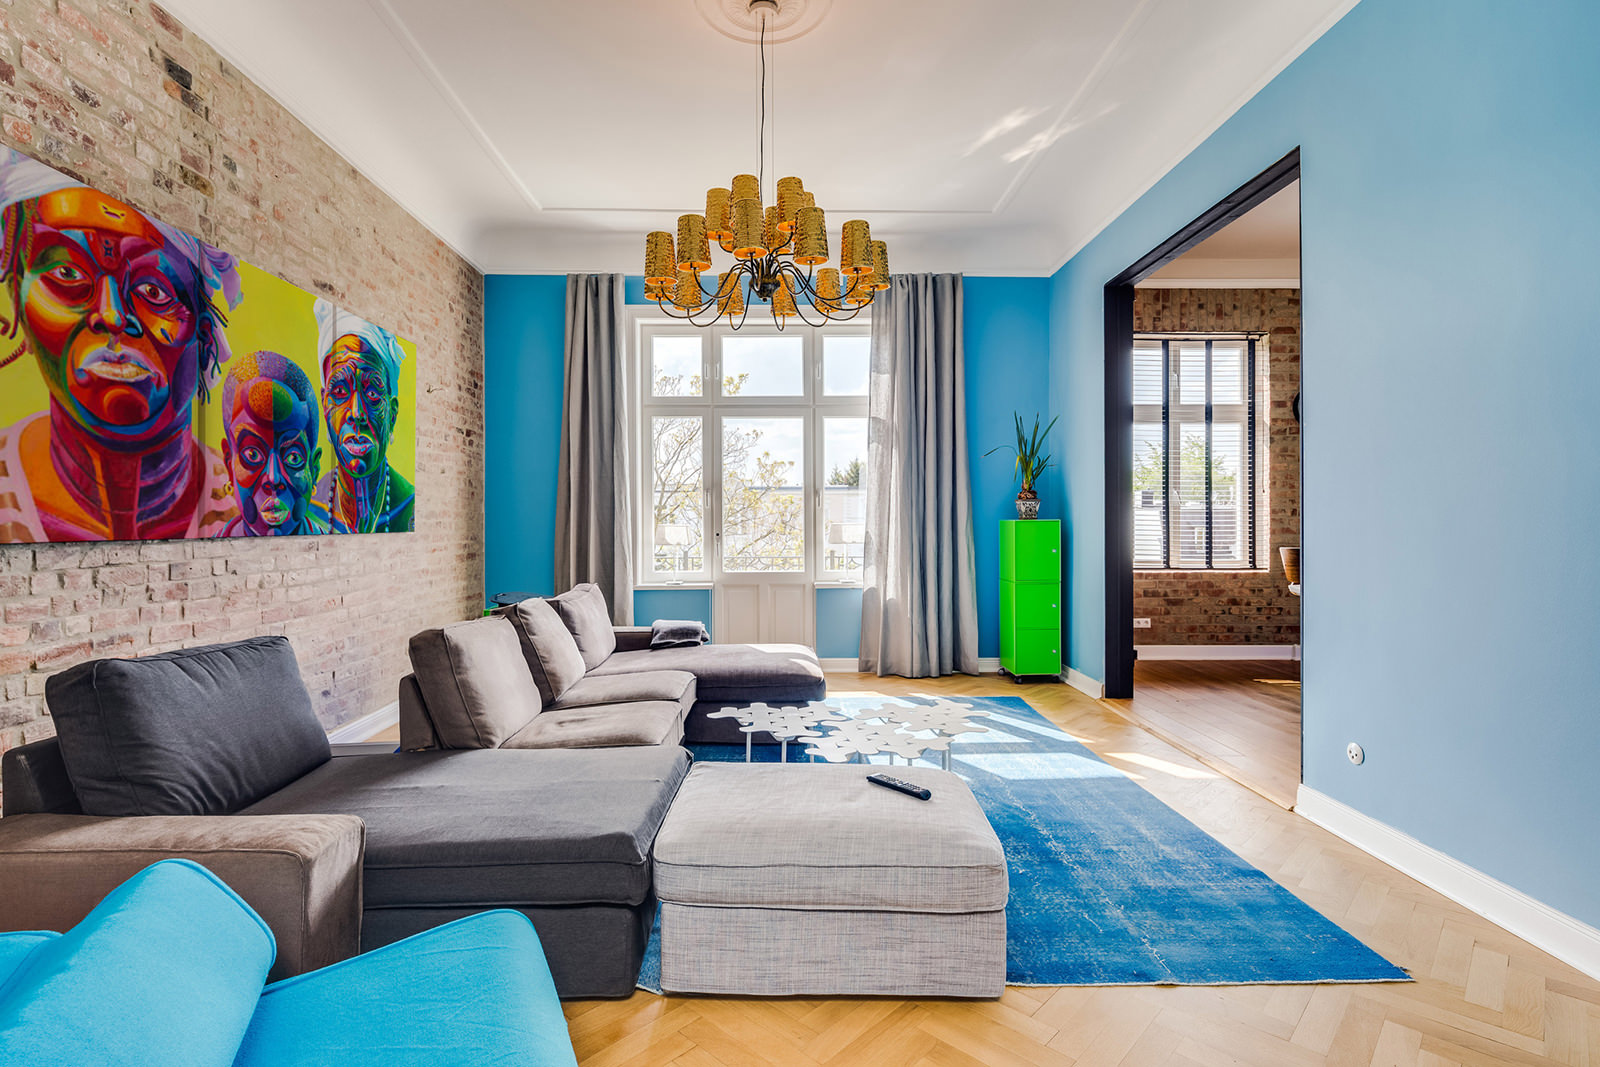 Например, вы можете покрасить одну из стен в яркий оттенок или использовать яркие подушки на диване или кресле.